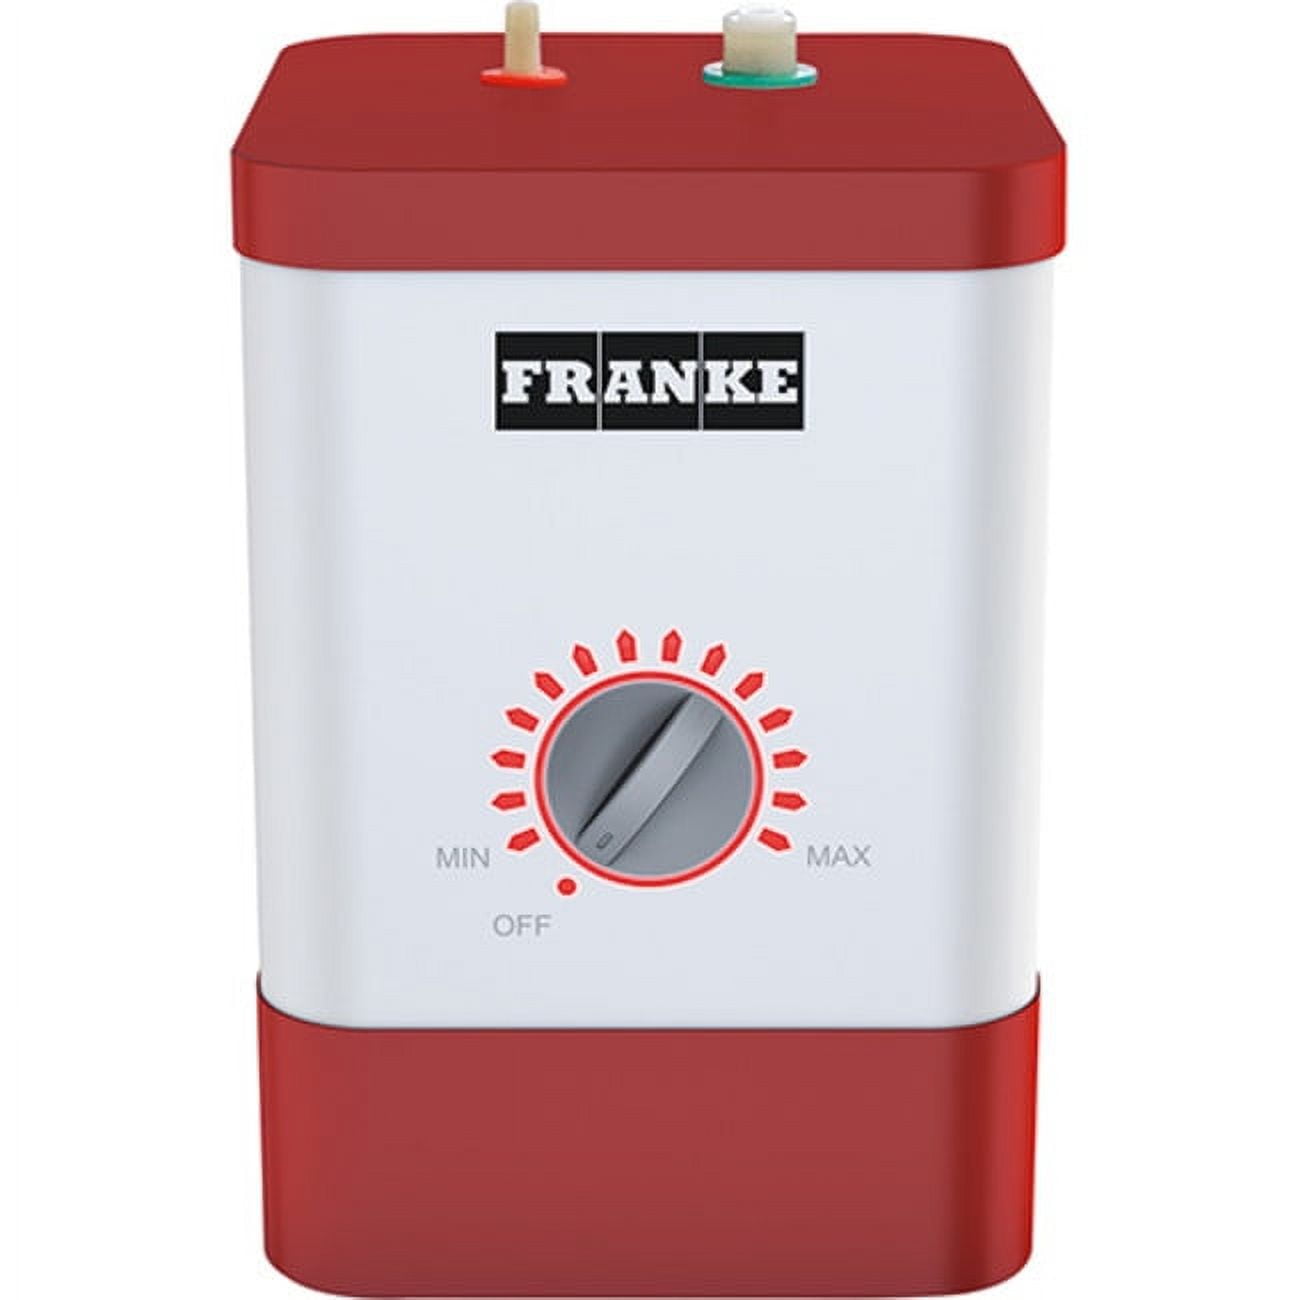 Commercial Hot Water Dispenser 4 Gallon(15.4L)Stainless Dispenser